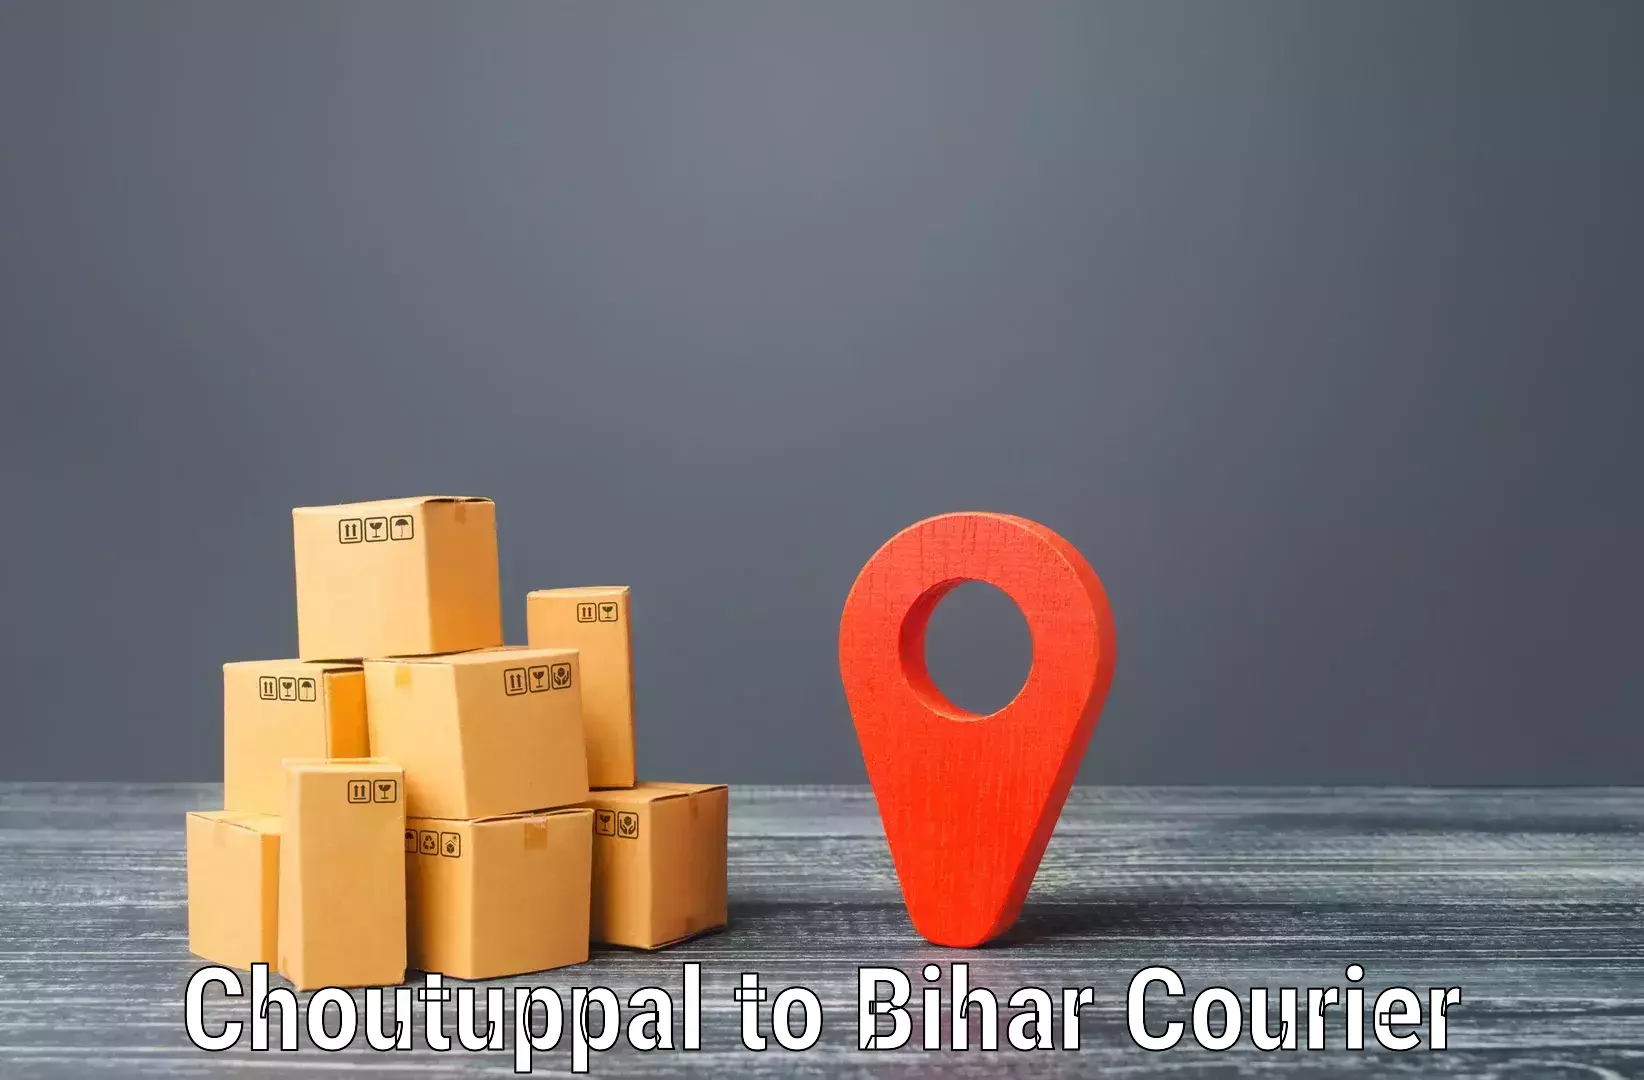 Modern courier technology Choutuppal to Bihar